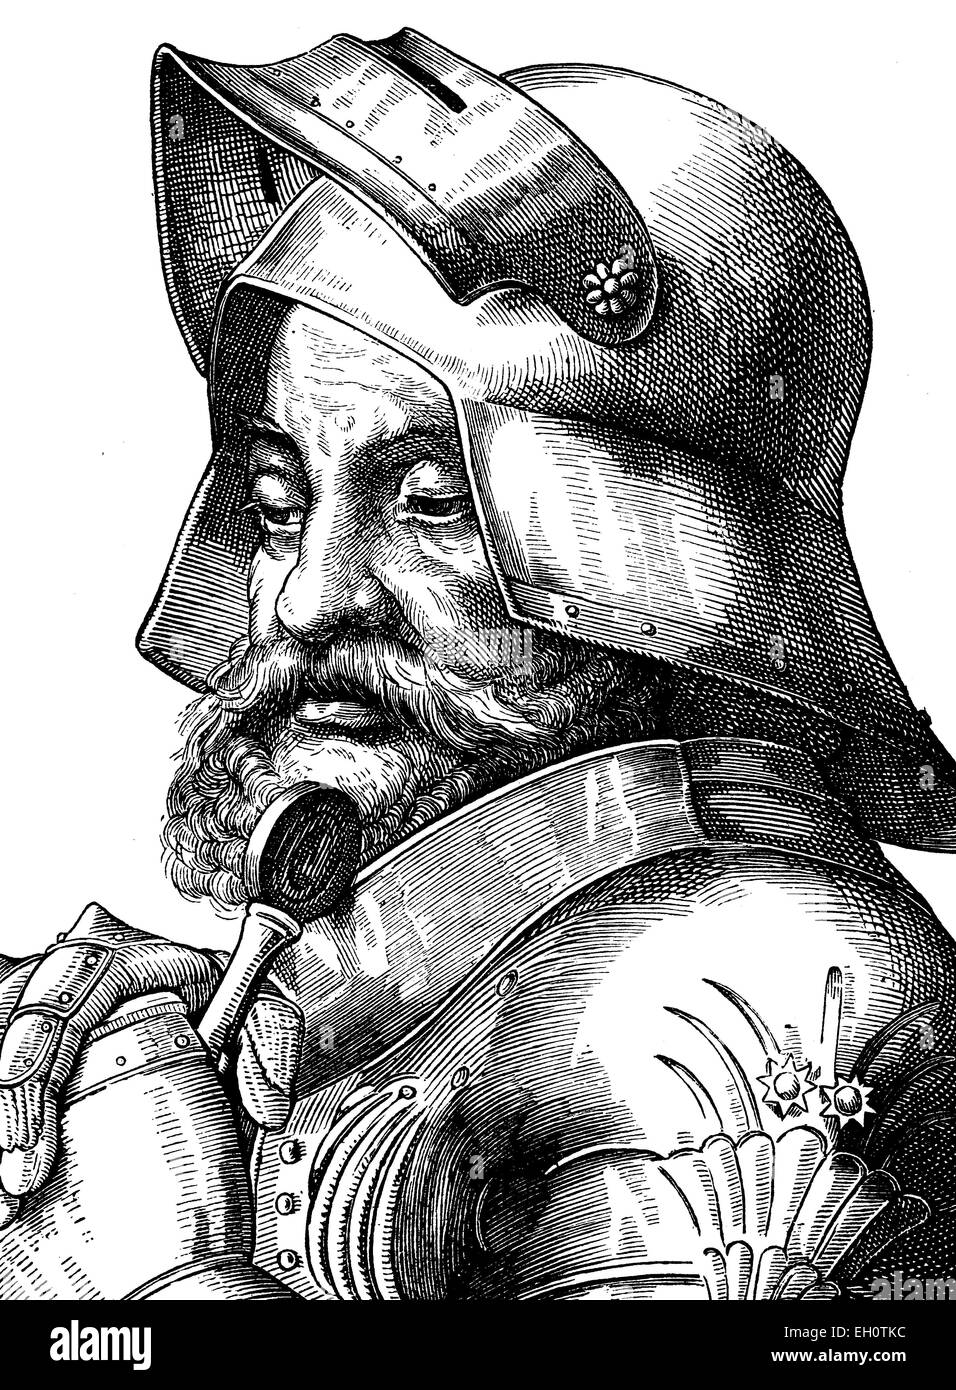 L'amélioration de l'image numérique de Goetz von Berlichingen, 1480 - 1562, commandant suprême de l'armée pendant la Guerre des paysans, portrait, illustration historique, 1880 Banque D'Images